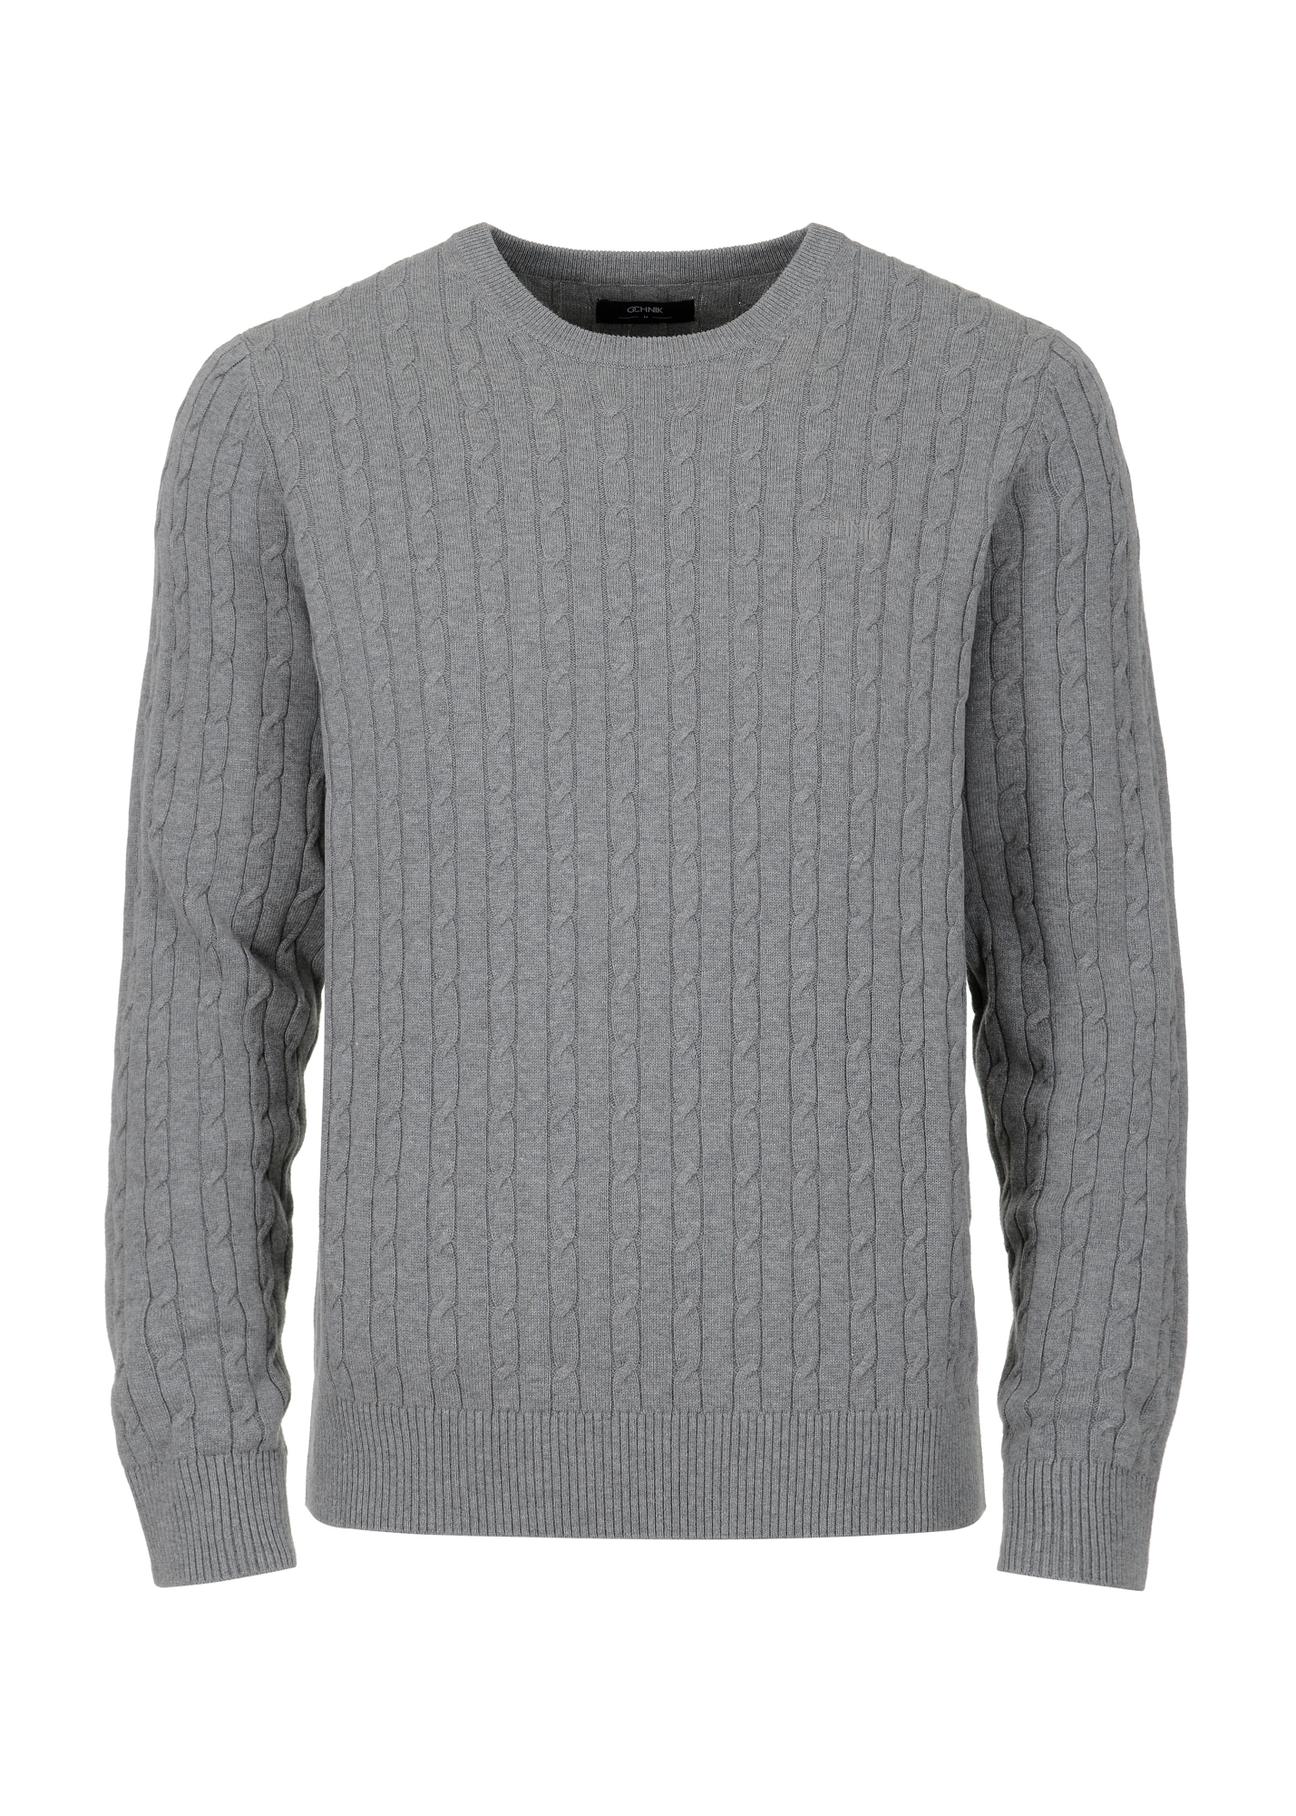 Bawełniany szary sweter męski SWEMT-0134-91(Z23)